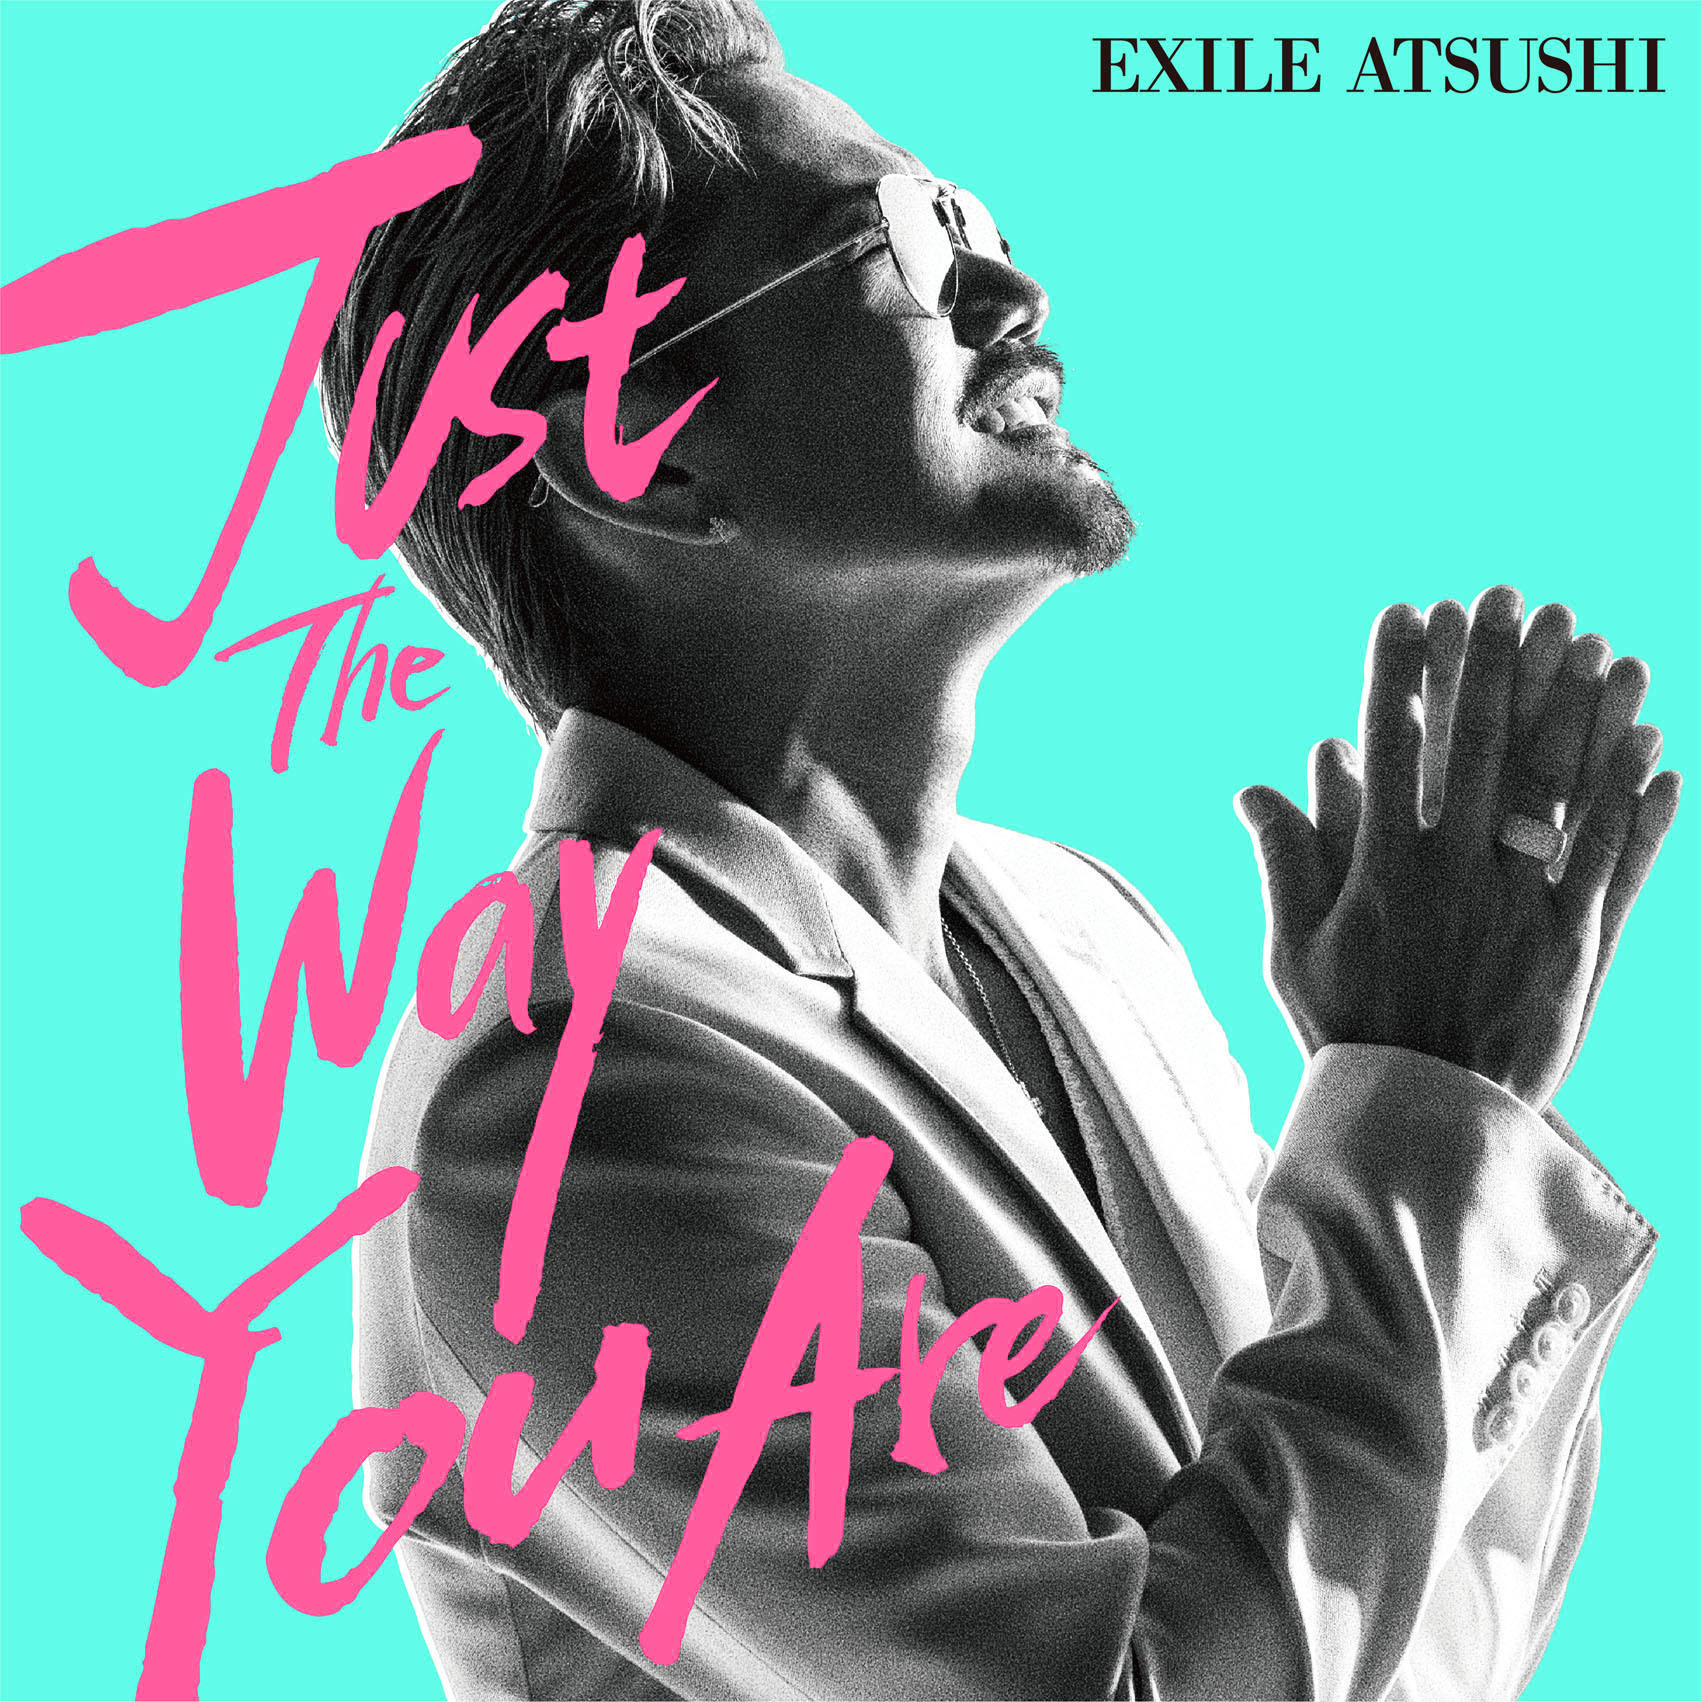 Exile Atsushi ブルーノ マーズの日本語詞カバー Just The Way You Are のmvを解禁 ストレートな愛 を真っ白な世界で表現 Spice エンタメ特化型情報メディア スパイス